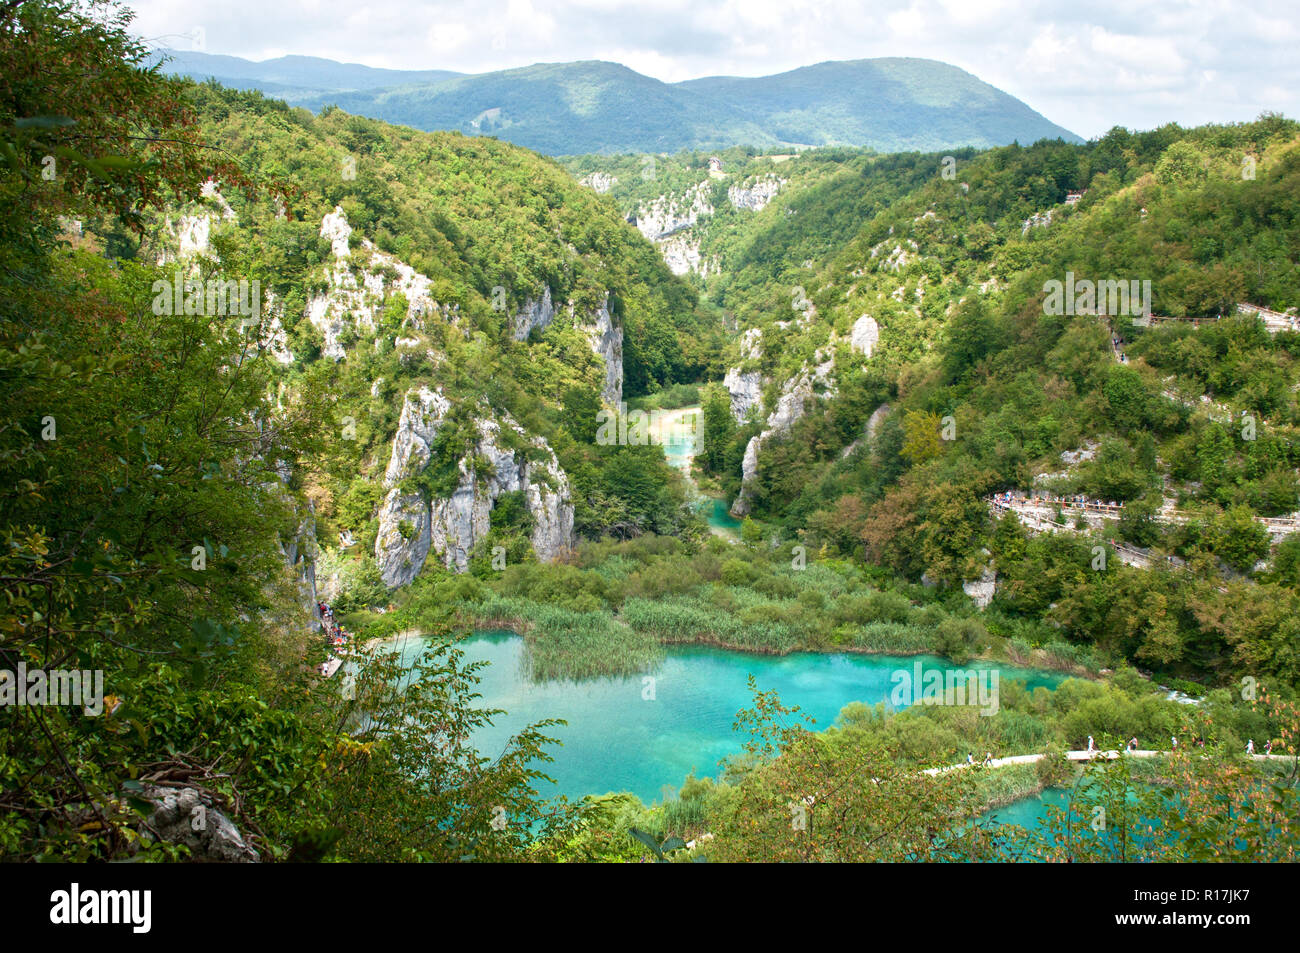 Lower Lakes canyon. Chemin de randonnée serpentant entre deux lacs aux eaux turquoises. Vue de dessus. Le parc national des lacs de Plitvice, Croatie Banque D'Images